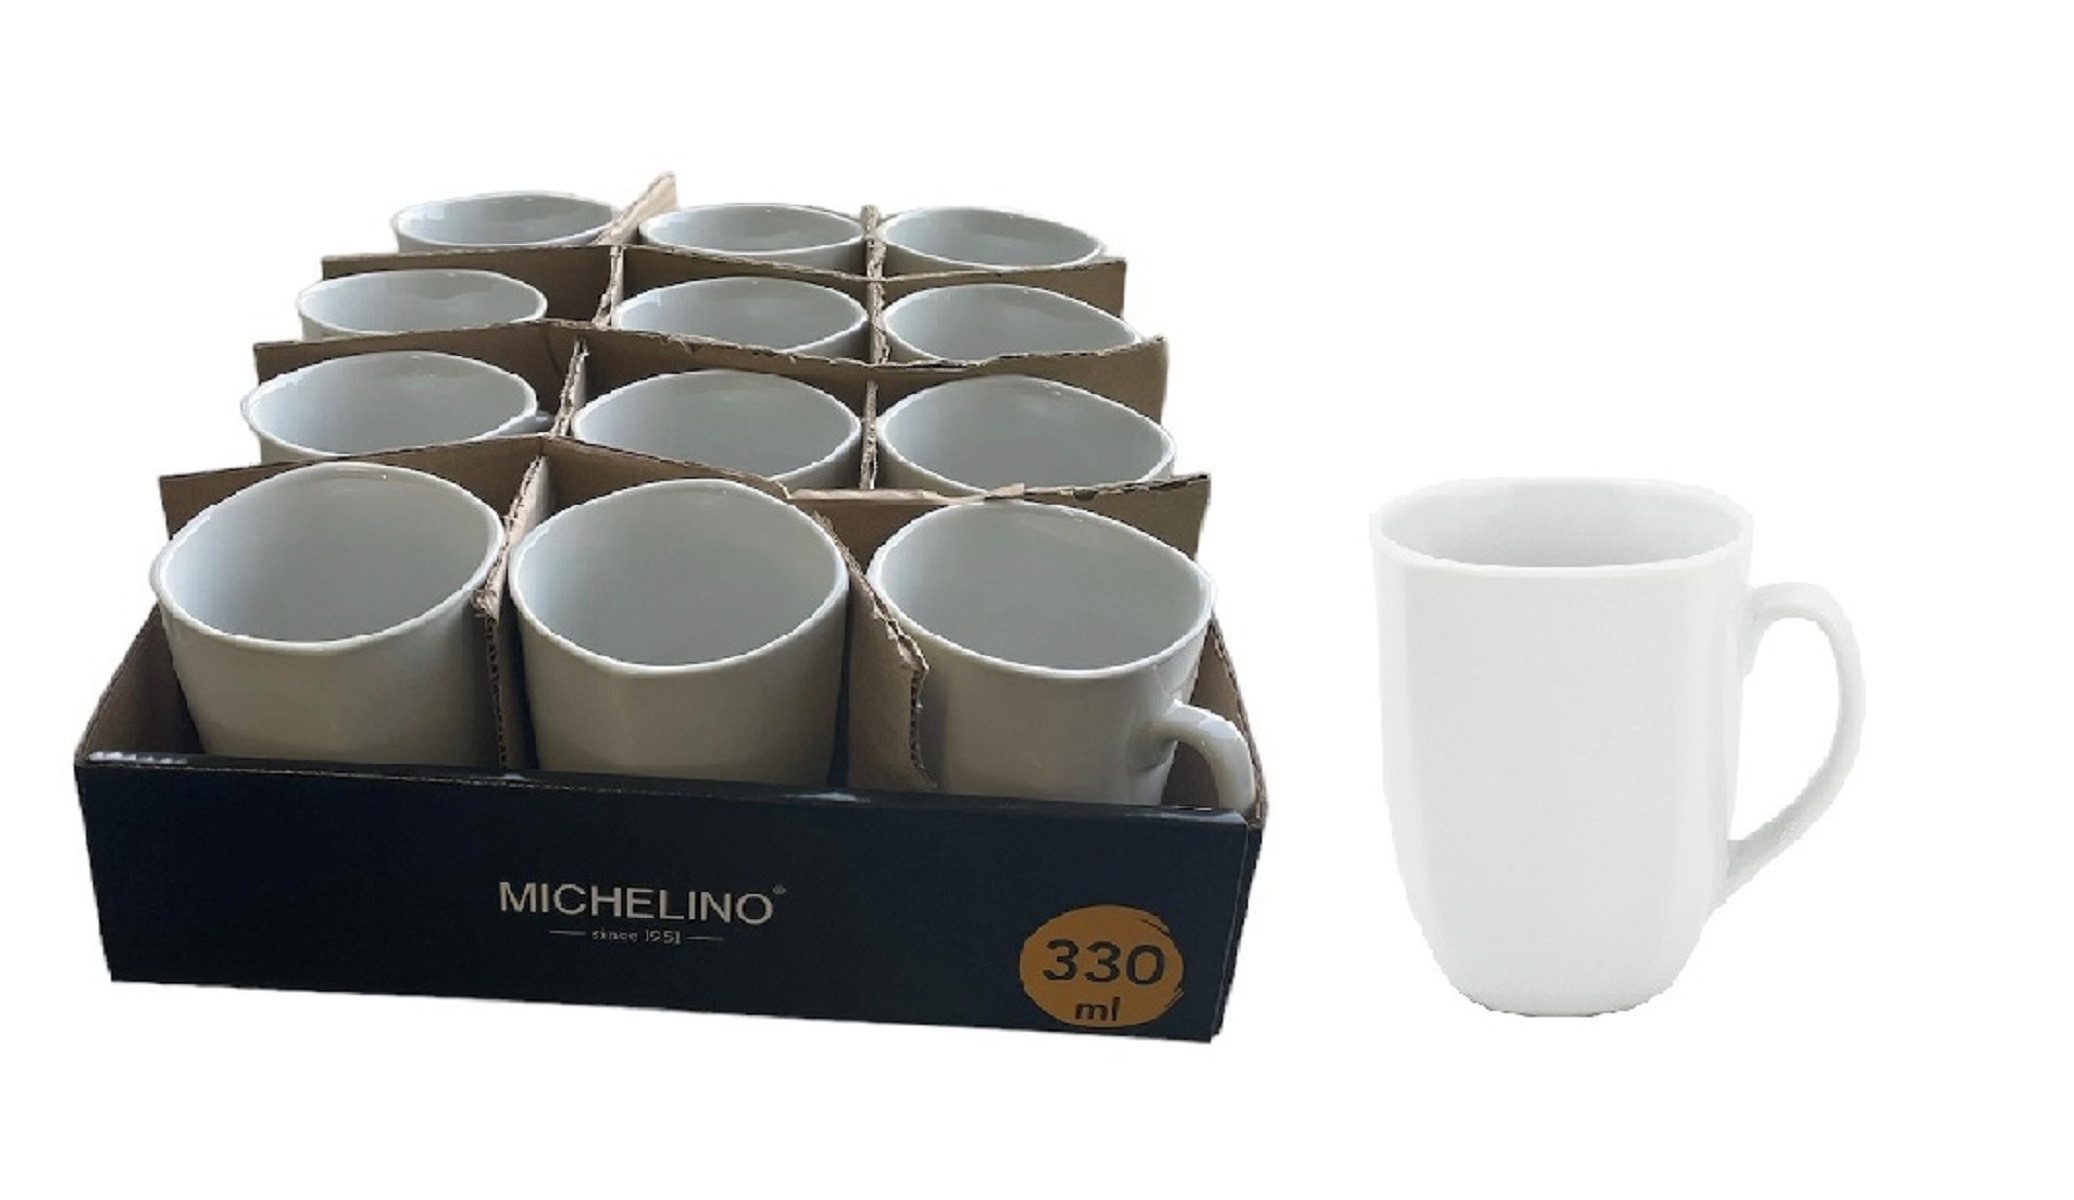 Michelino Latte-Macchiato-Tasse Kaffeebecher 330ml Serie Leonie Porzellan Weiß